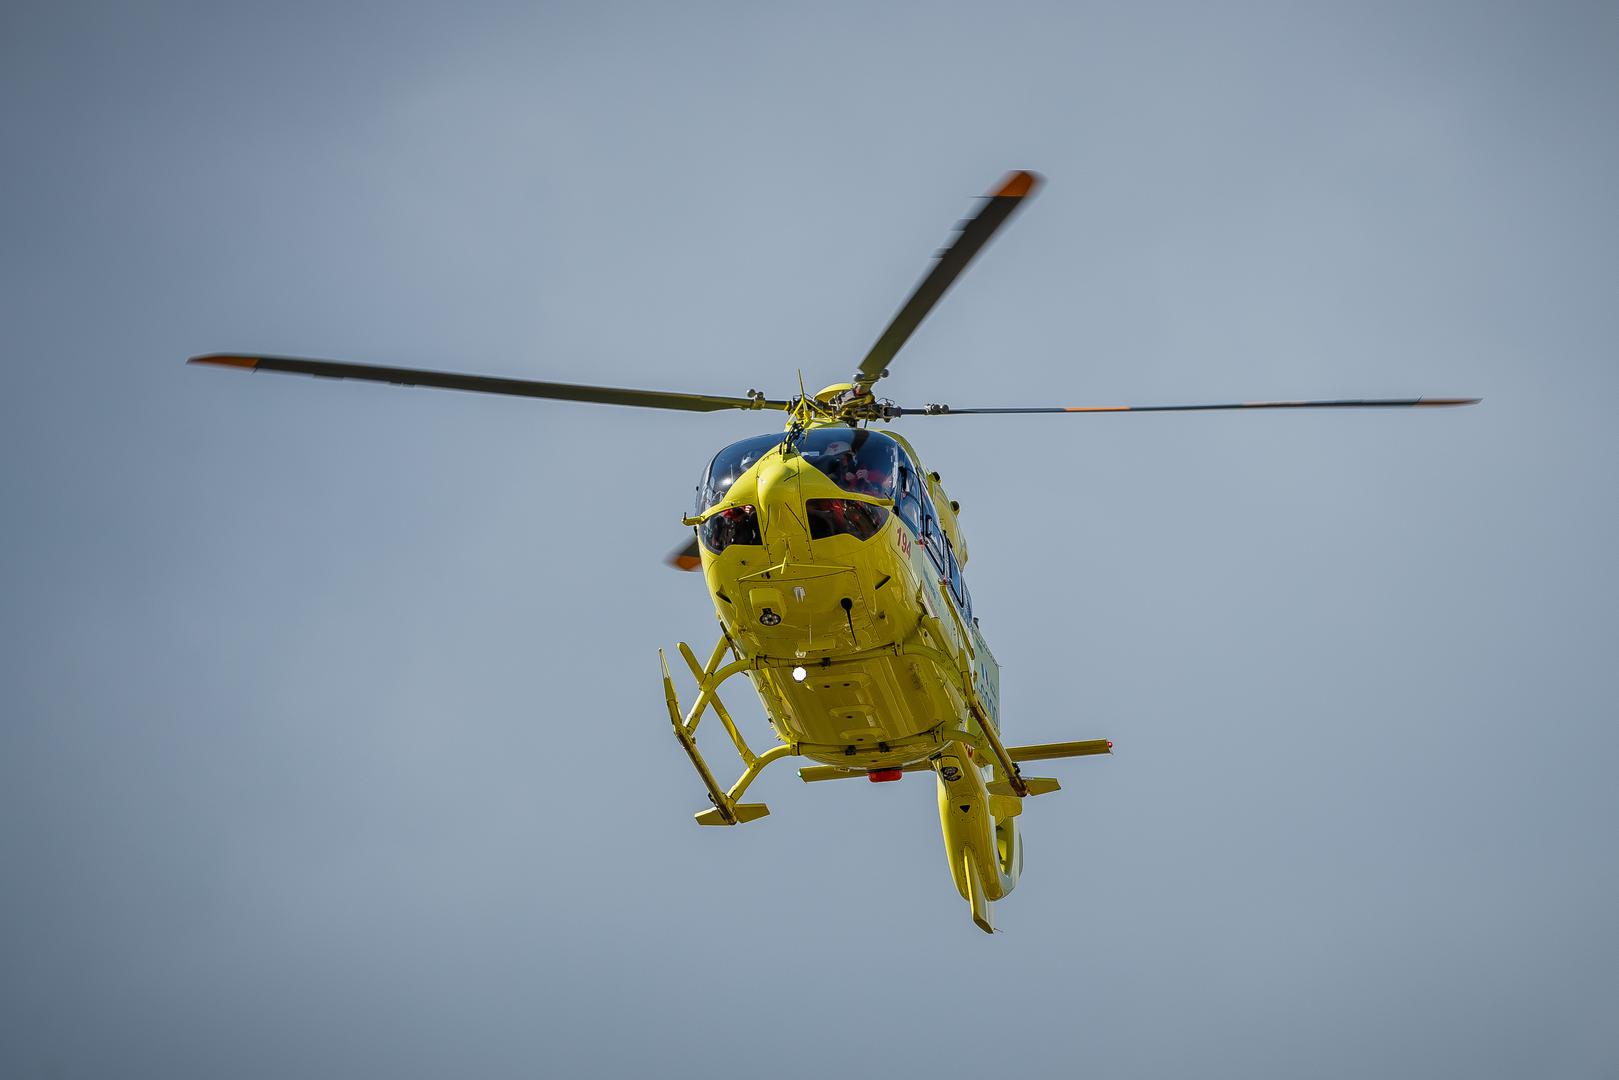 Slijetanjem helikoptera iz splitske Zračne luke Sv. Jeronima otvoren je rekonstruirani helidrom Firule splitskoga KBC-a. Medicinska posada helikoptera održala je i pokaznu vježbu u nazočnosti ministra zdravstva Vilija Beroša.

